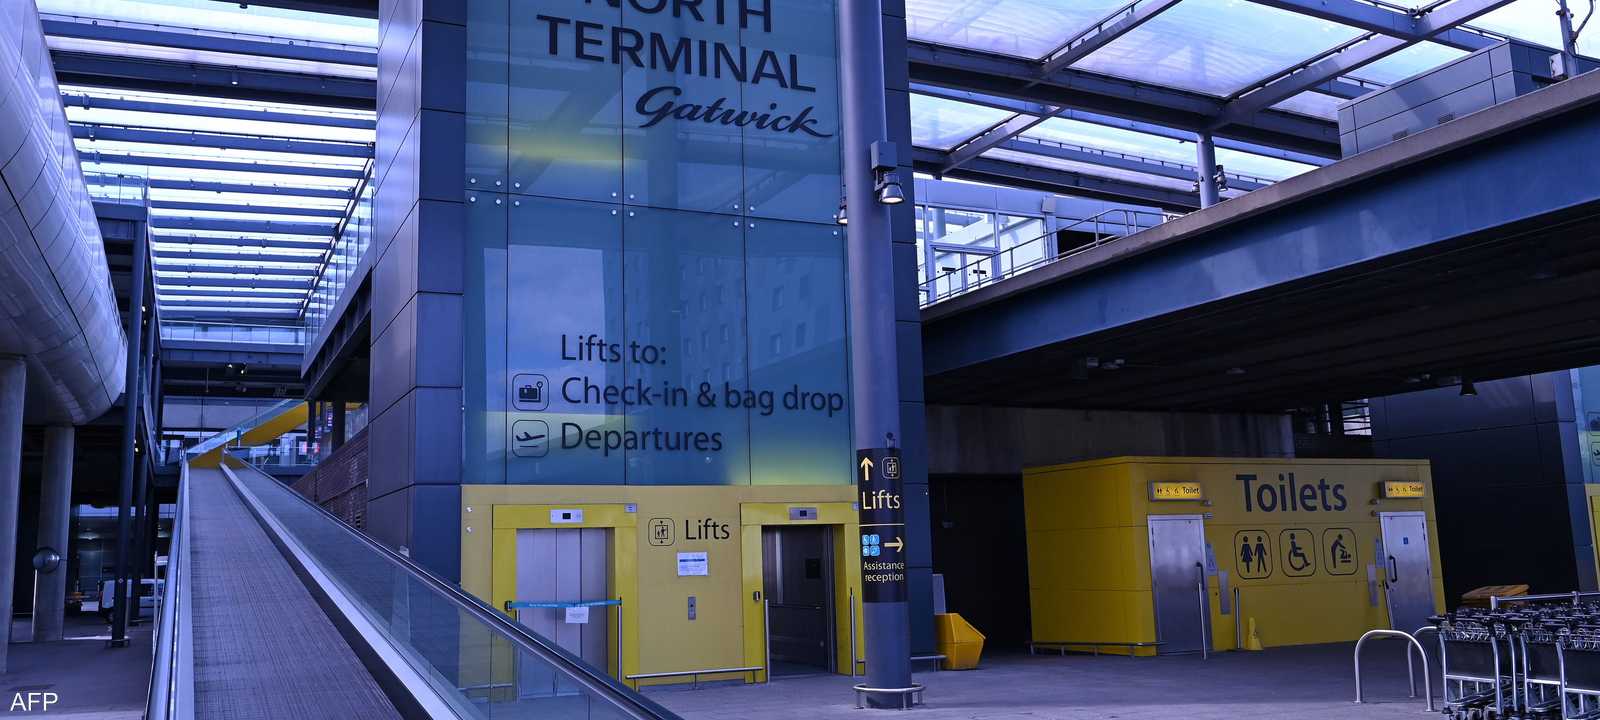 مطار غاتويك في بريطانيا